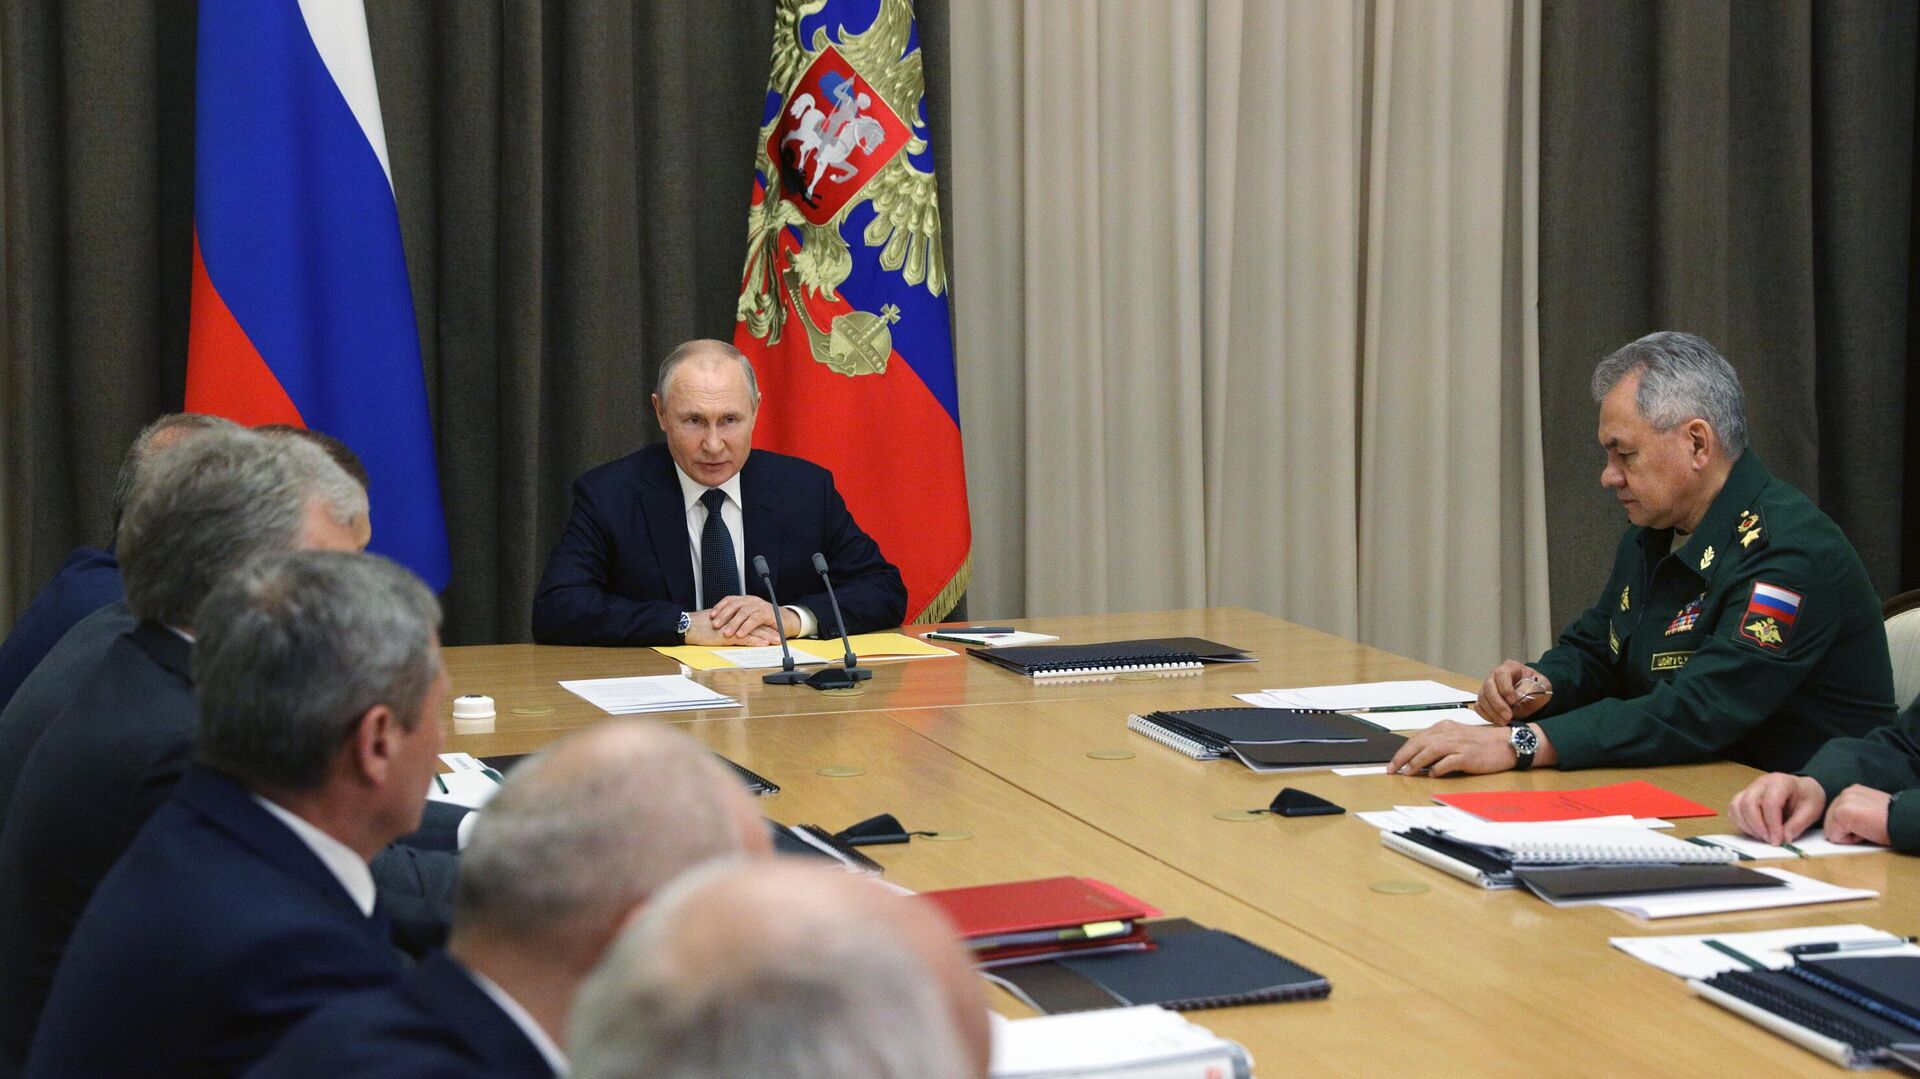 Владимир Путин проводит заключительное совещание из серии встреч по оборонной тематике с руководством министерства обороны РФ  - РИА Новости, 1920, 27.05.2021